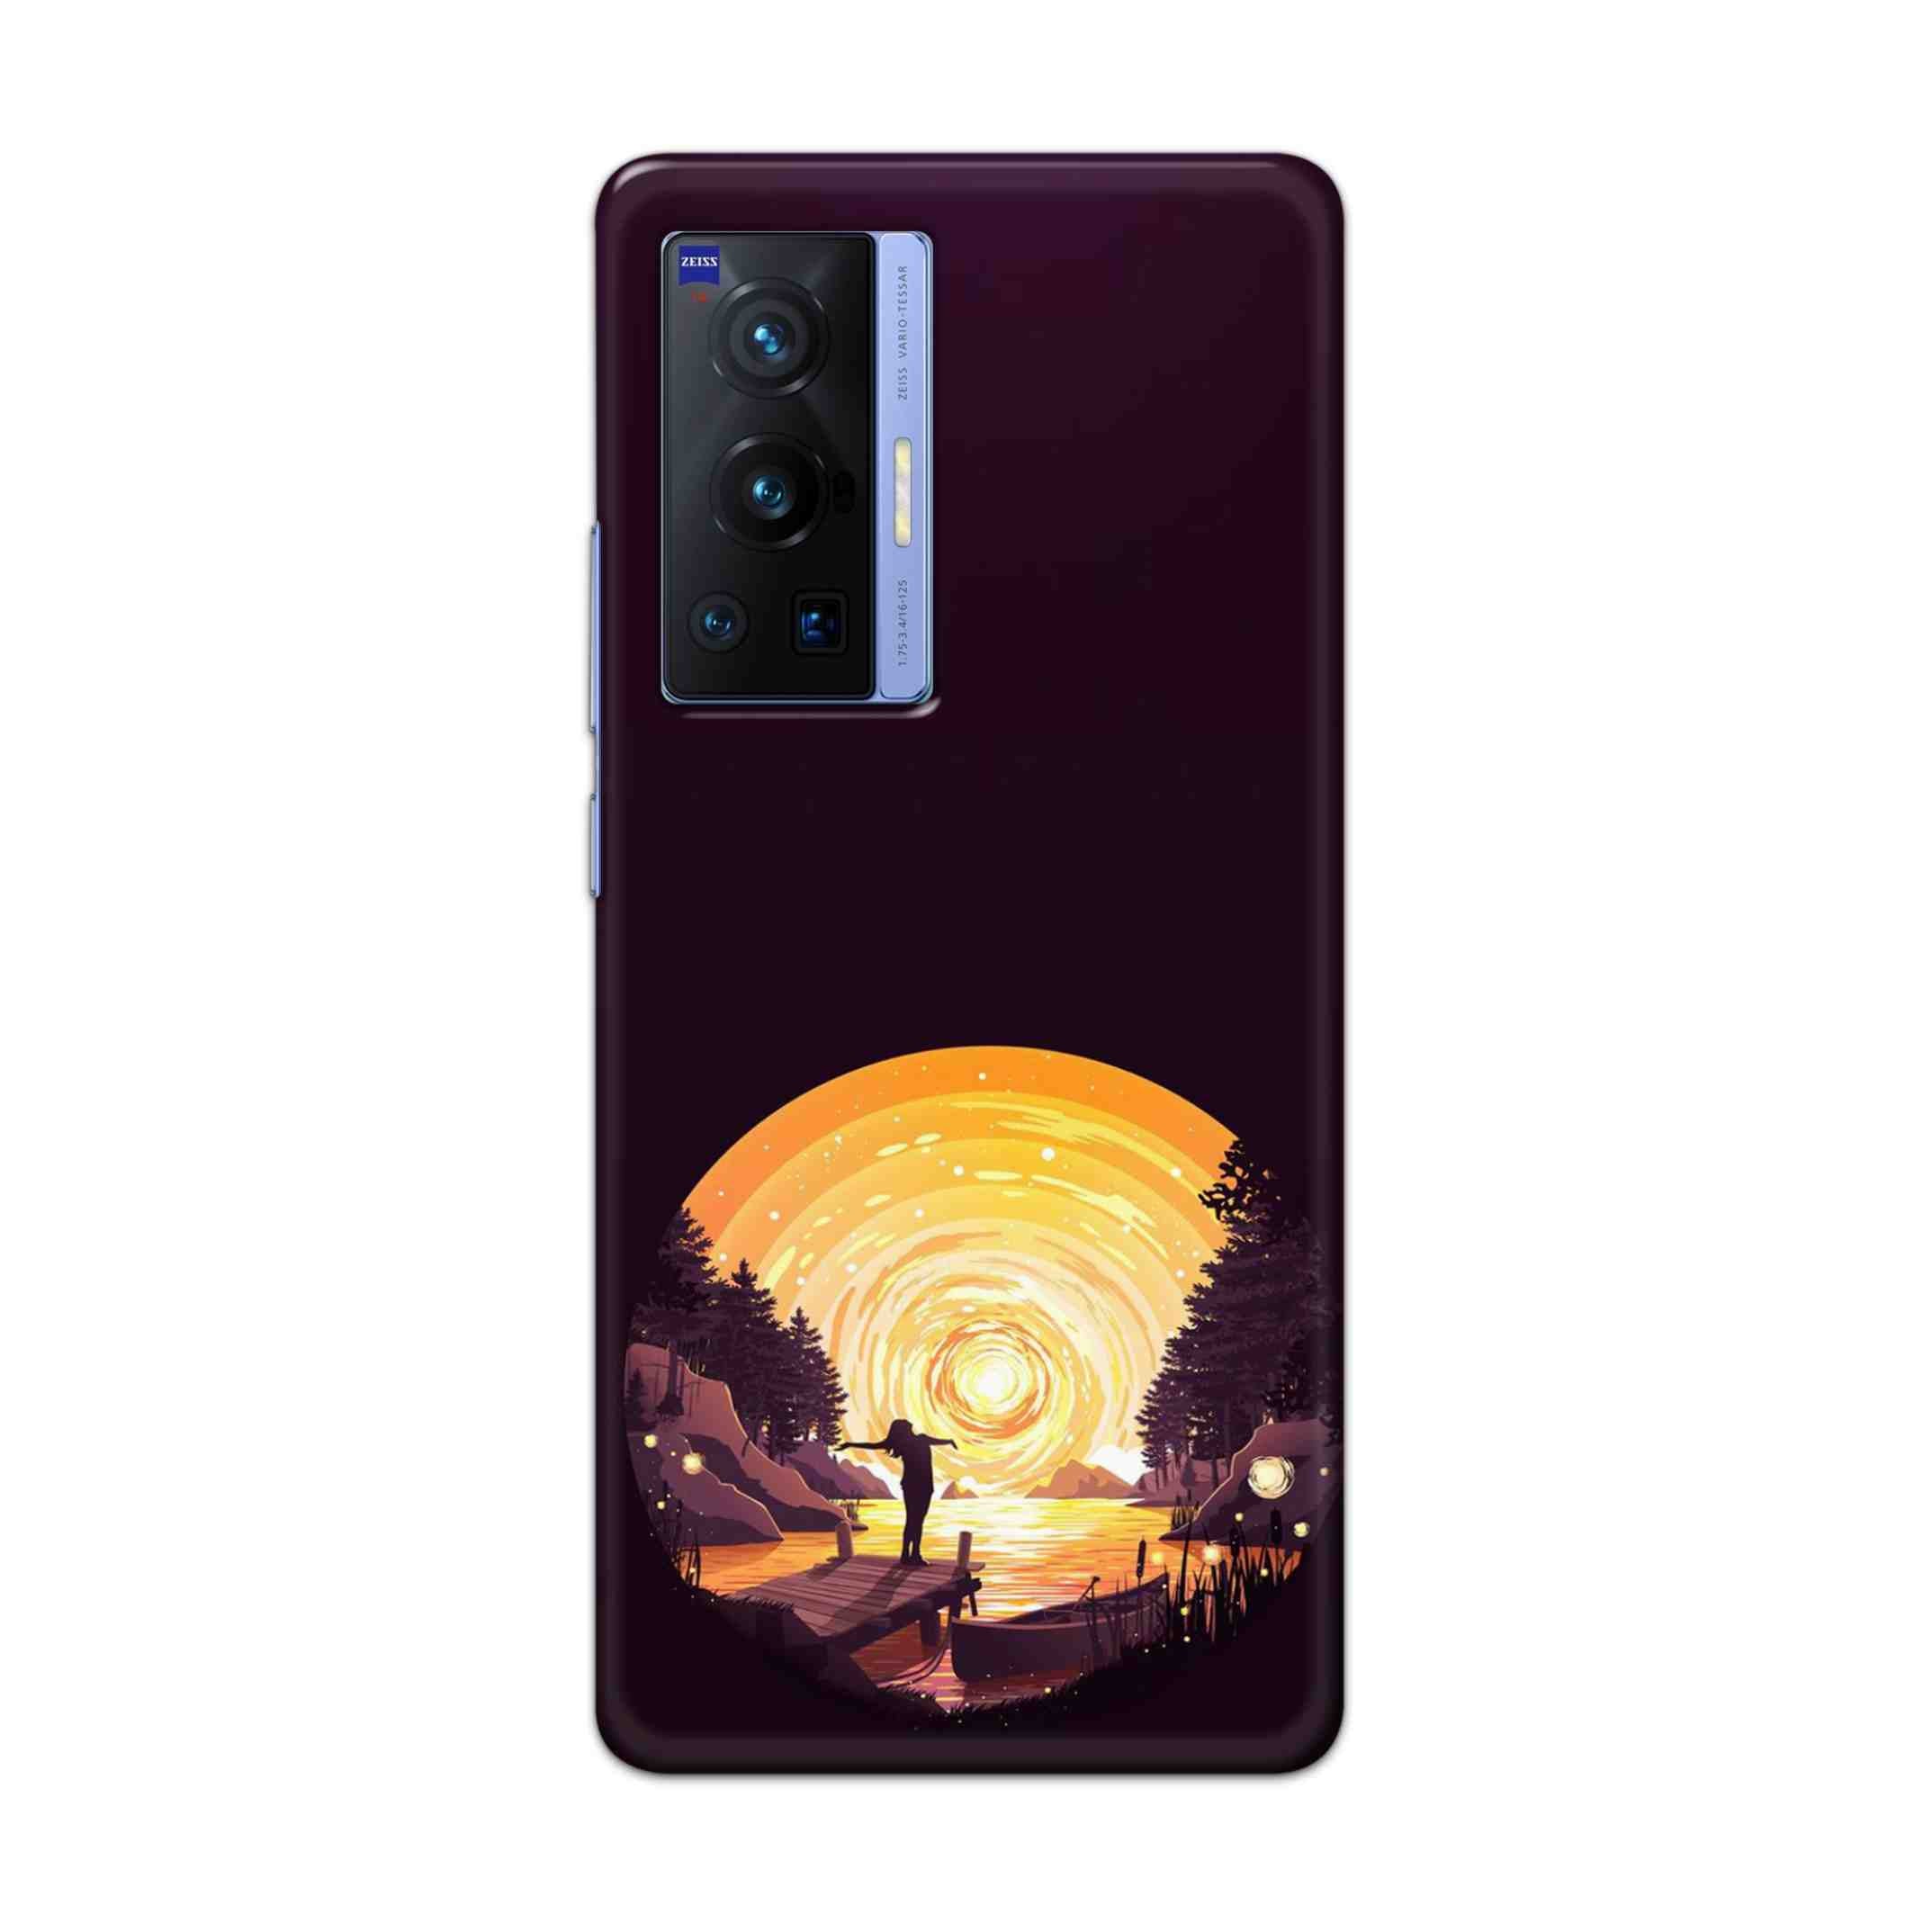 Buy Night Sunrise Hard Back Mobile Phone Case Cover For Vivo X70 Pro Online